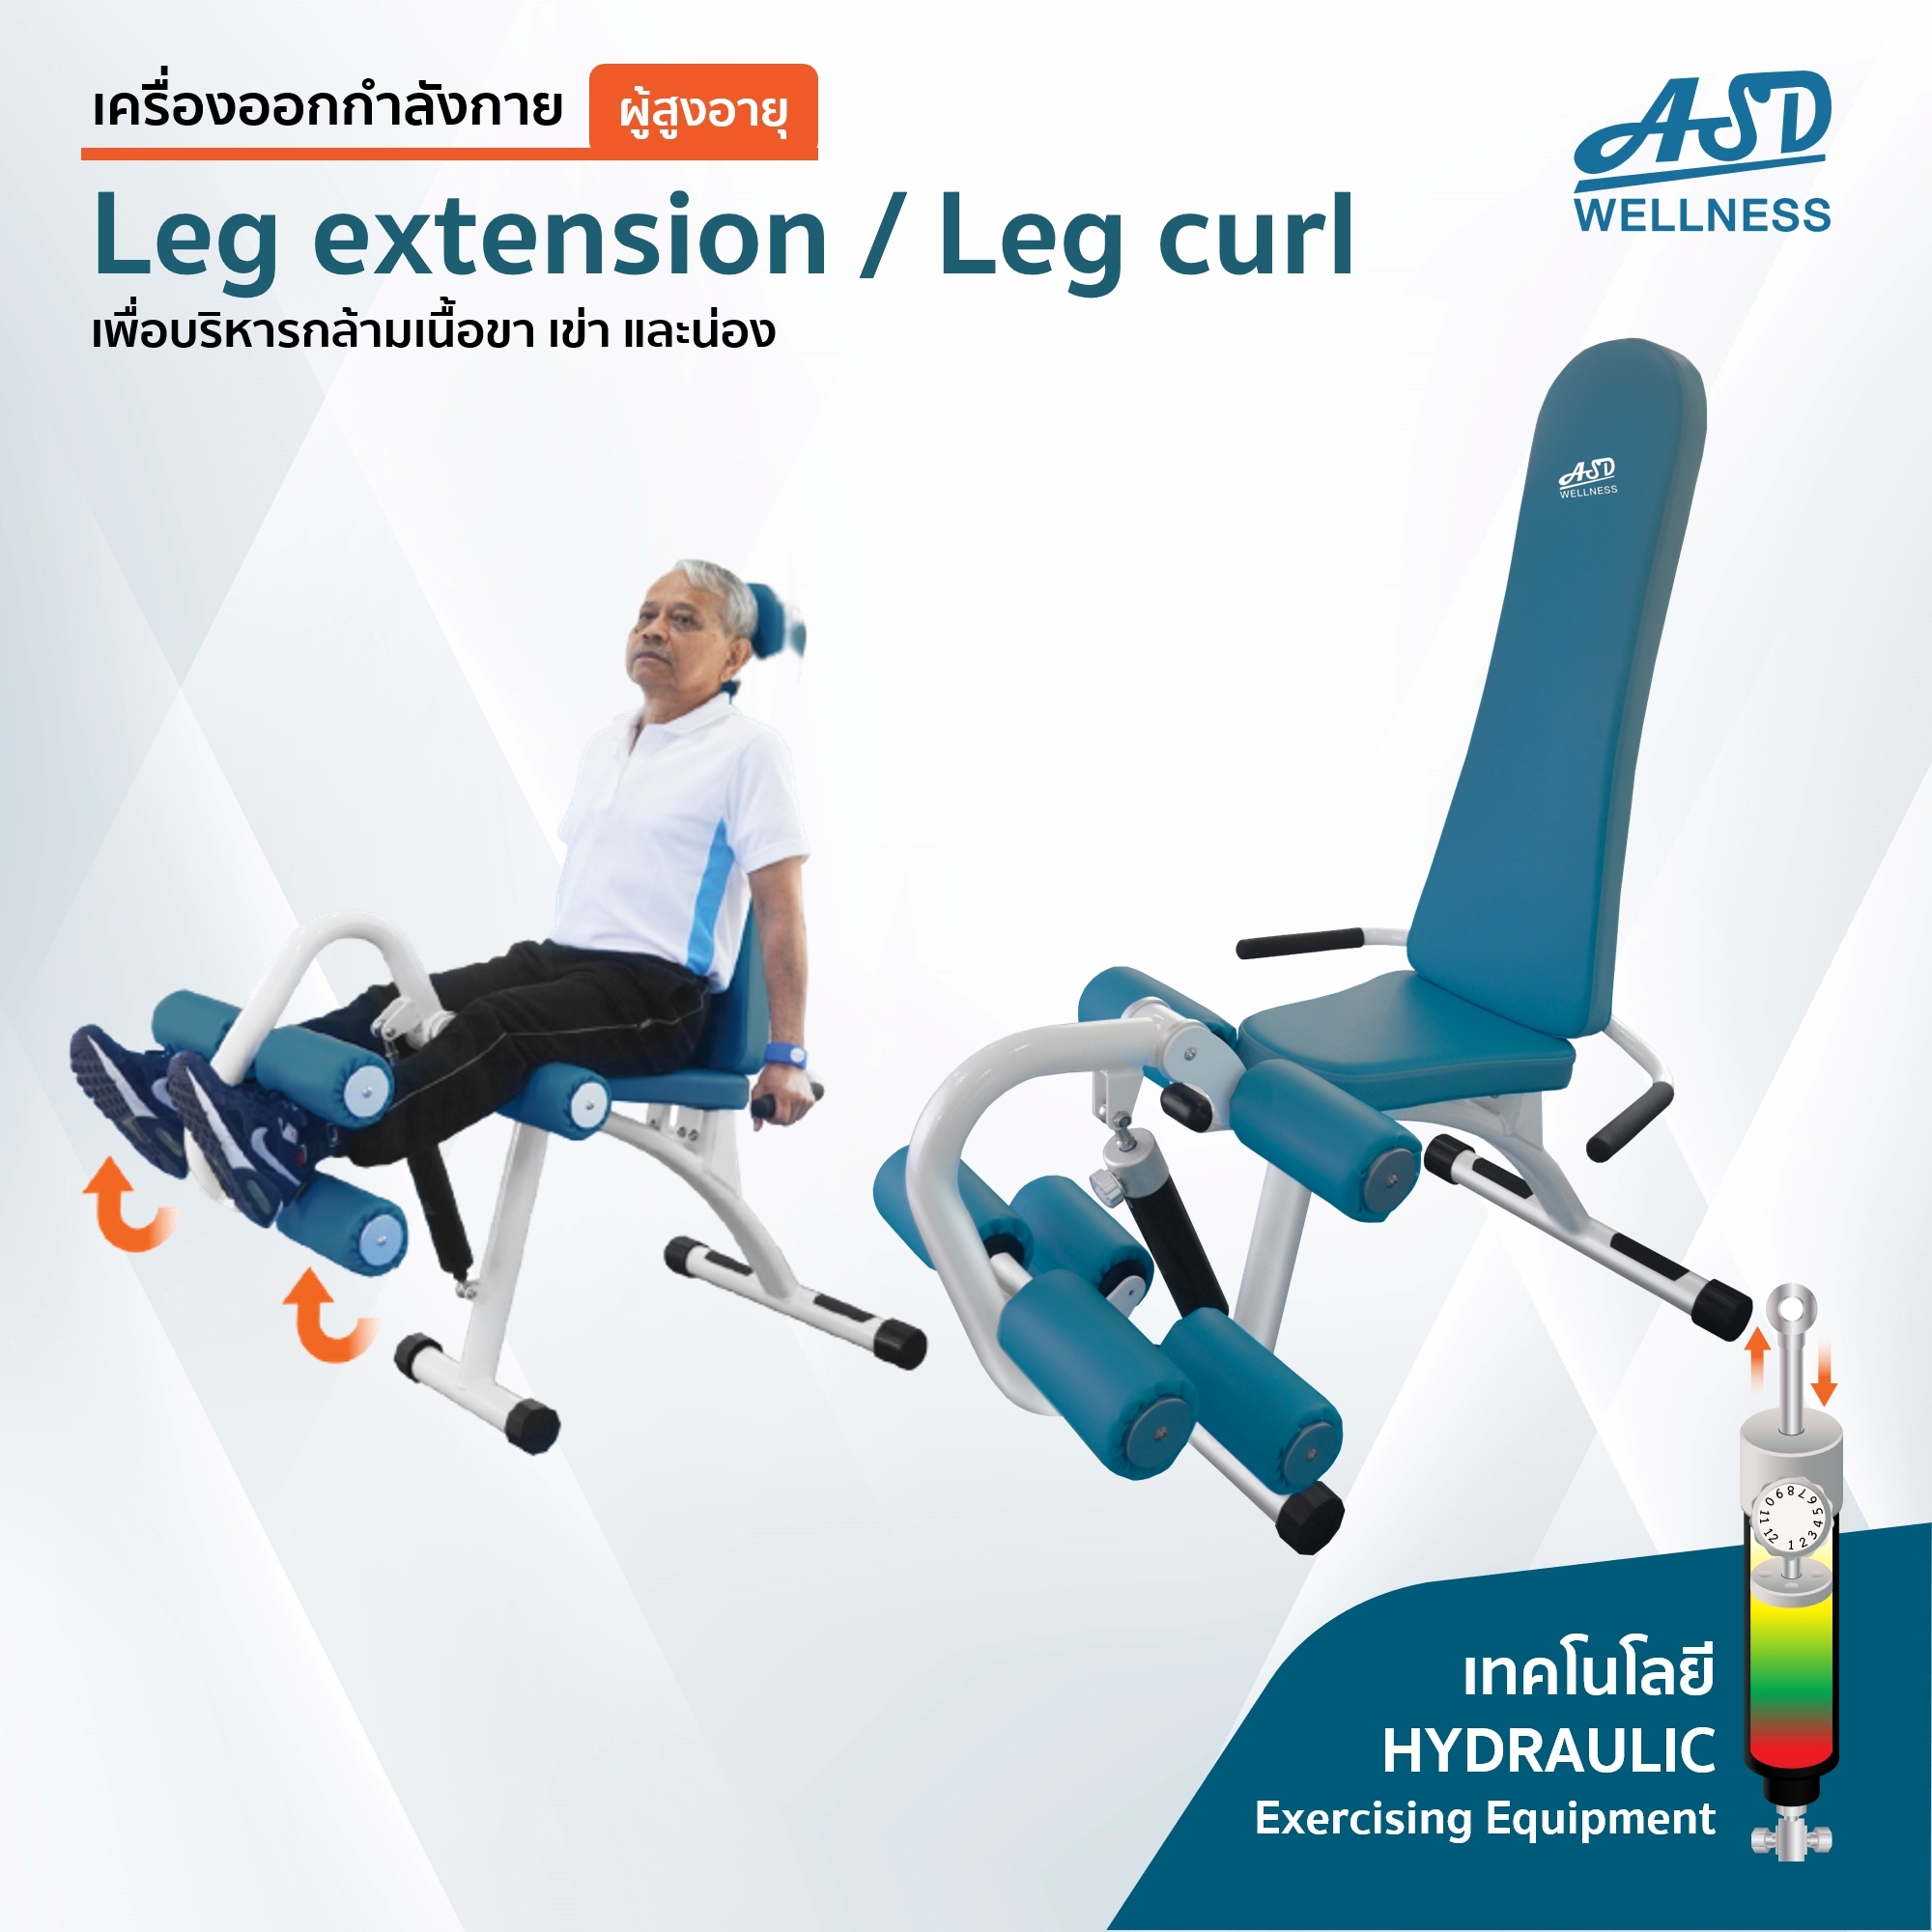 เครื่องออกกำลังกาย สำหรับผู้สูงอายุ เพื่อบริหารกล้ามเนื้อขา เข่า และน่อง Leg extension / Leg curl